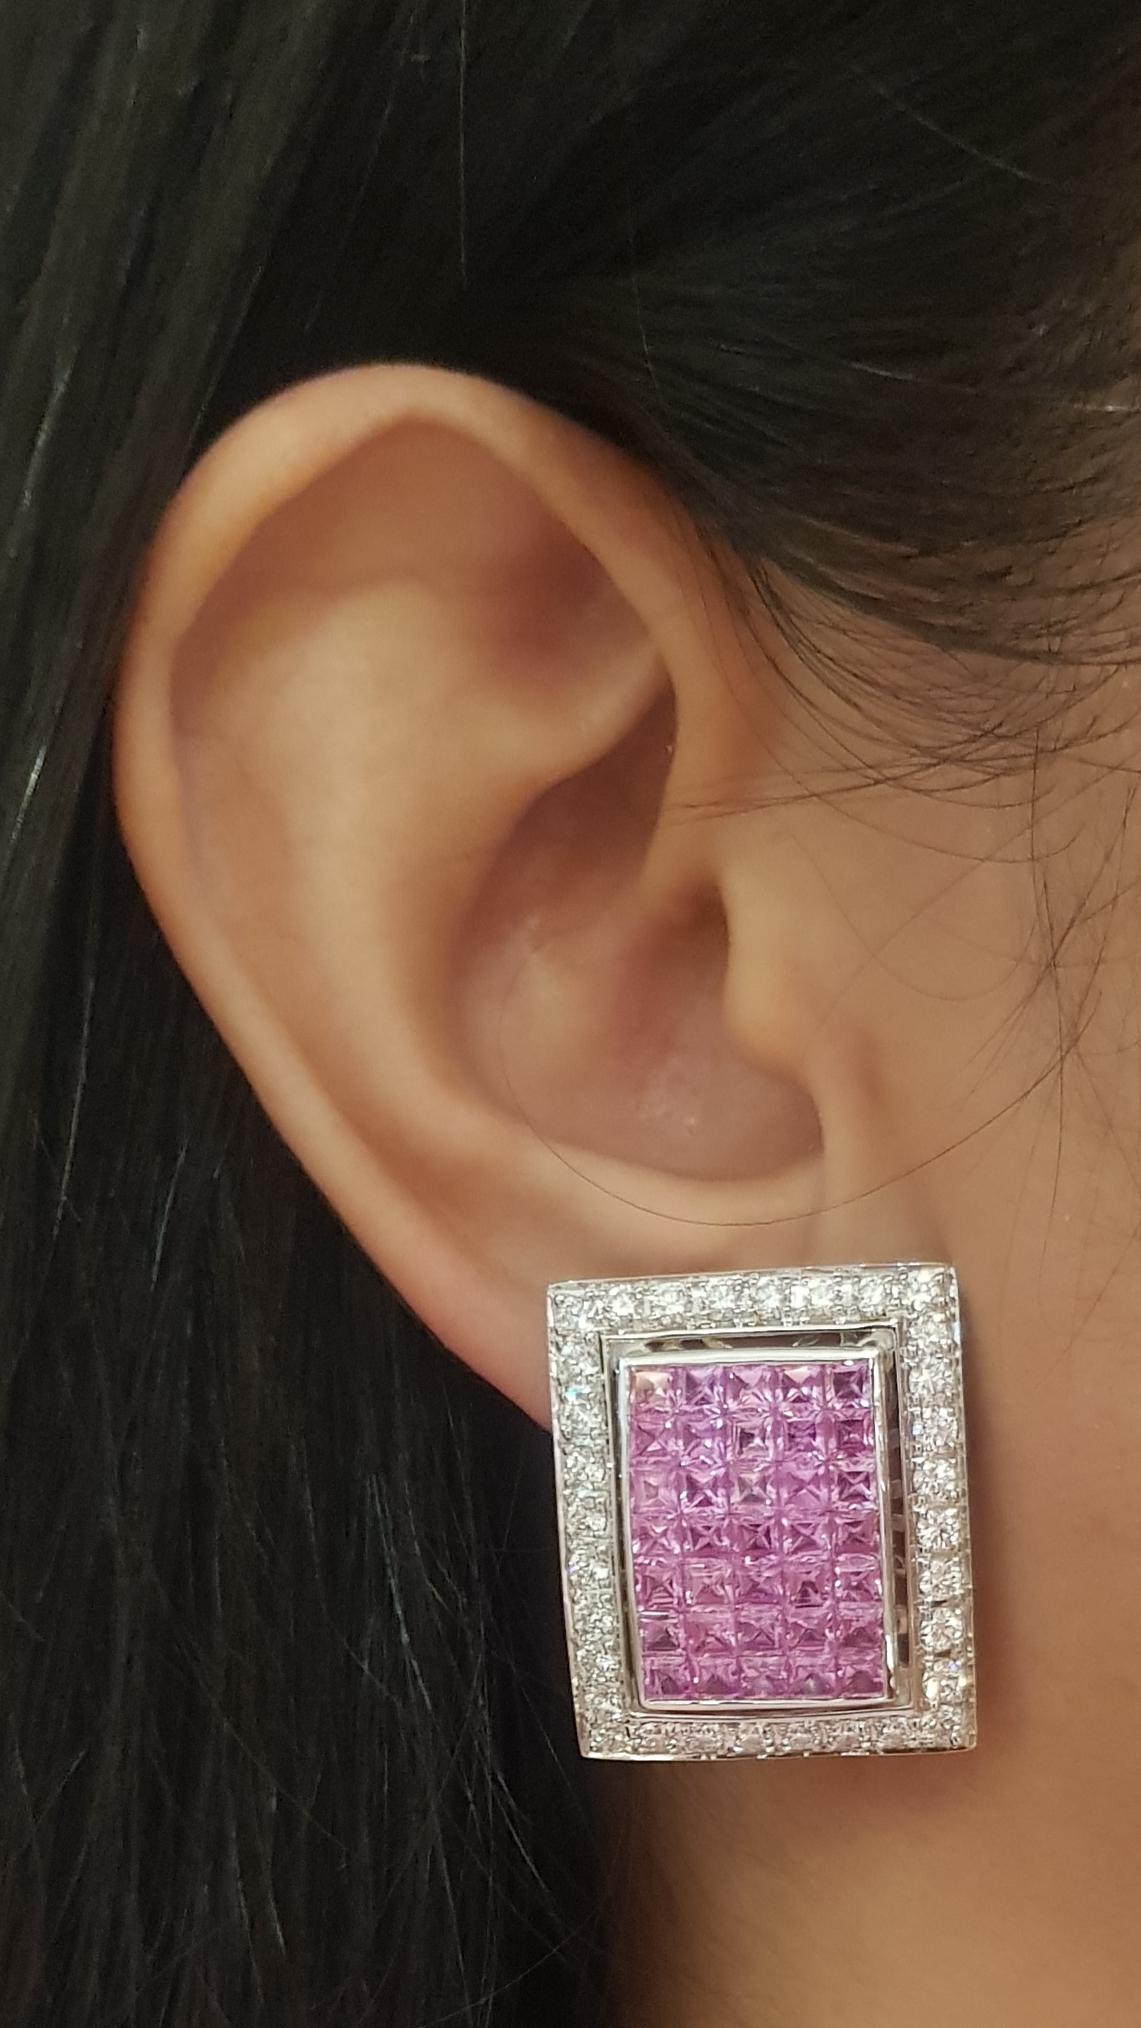 Boucles d'oreilles composées d'un saphir rose de 11,78 carats et d'un diamant de 2,74 carats, sertis dans une monture en or blanc 18 carats.

Largeur : 2,2 cm 
Longueur : 2,6  cm
Poids total : 23,09 grammes

